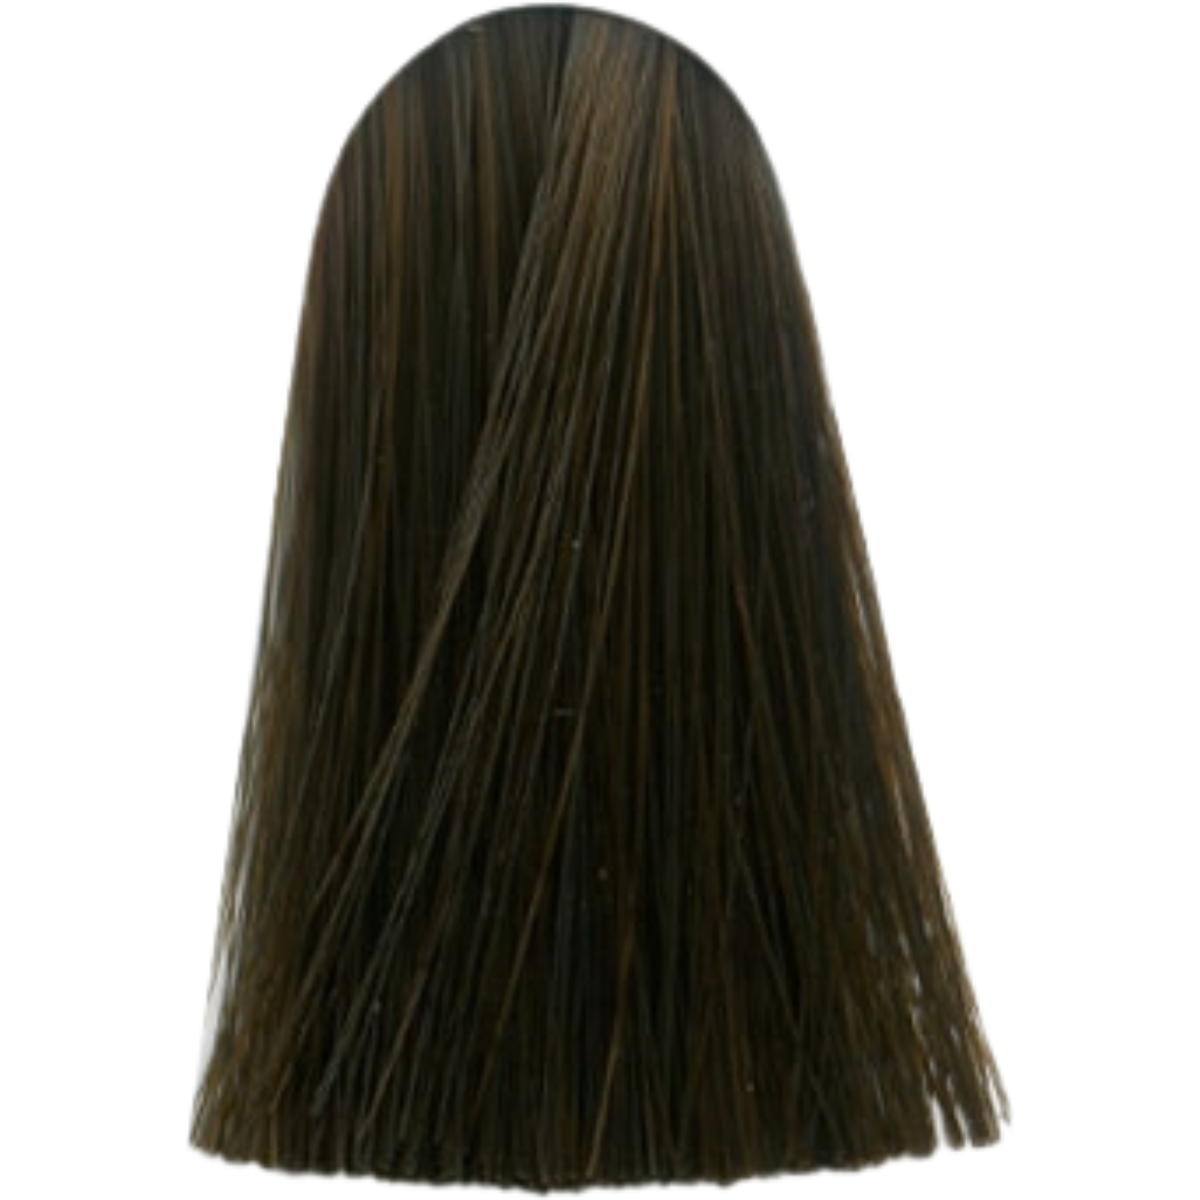 צבע לשיער 6.84 DARK BLONDE CHOCOLATE COPPER אינדולה INDOLA צבע לשיער 60 גרם